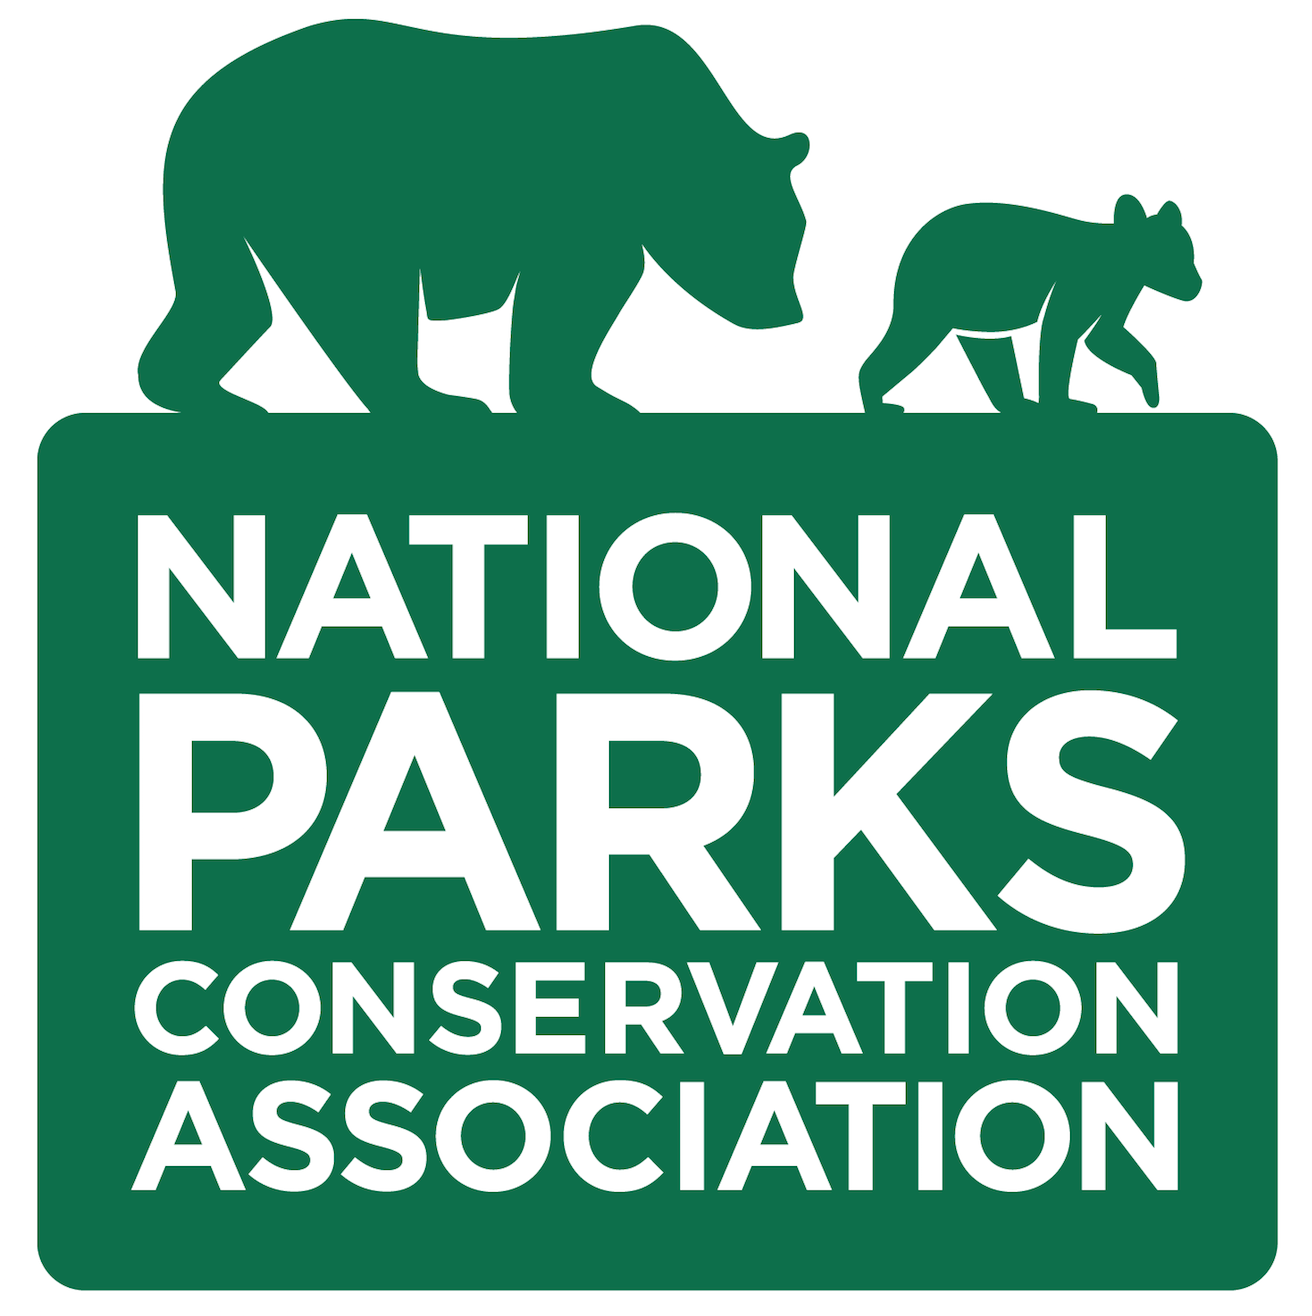 National Parks Conservation Association Logo 2016.png